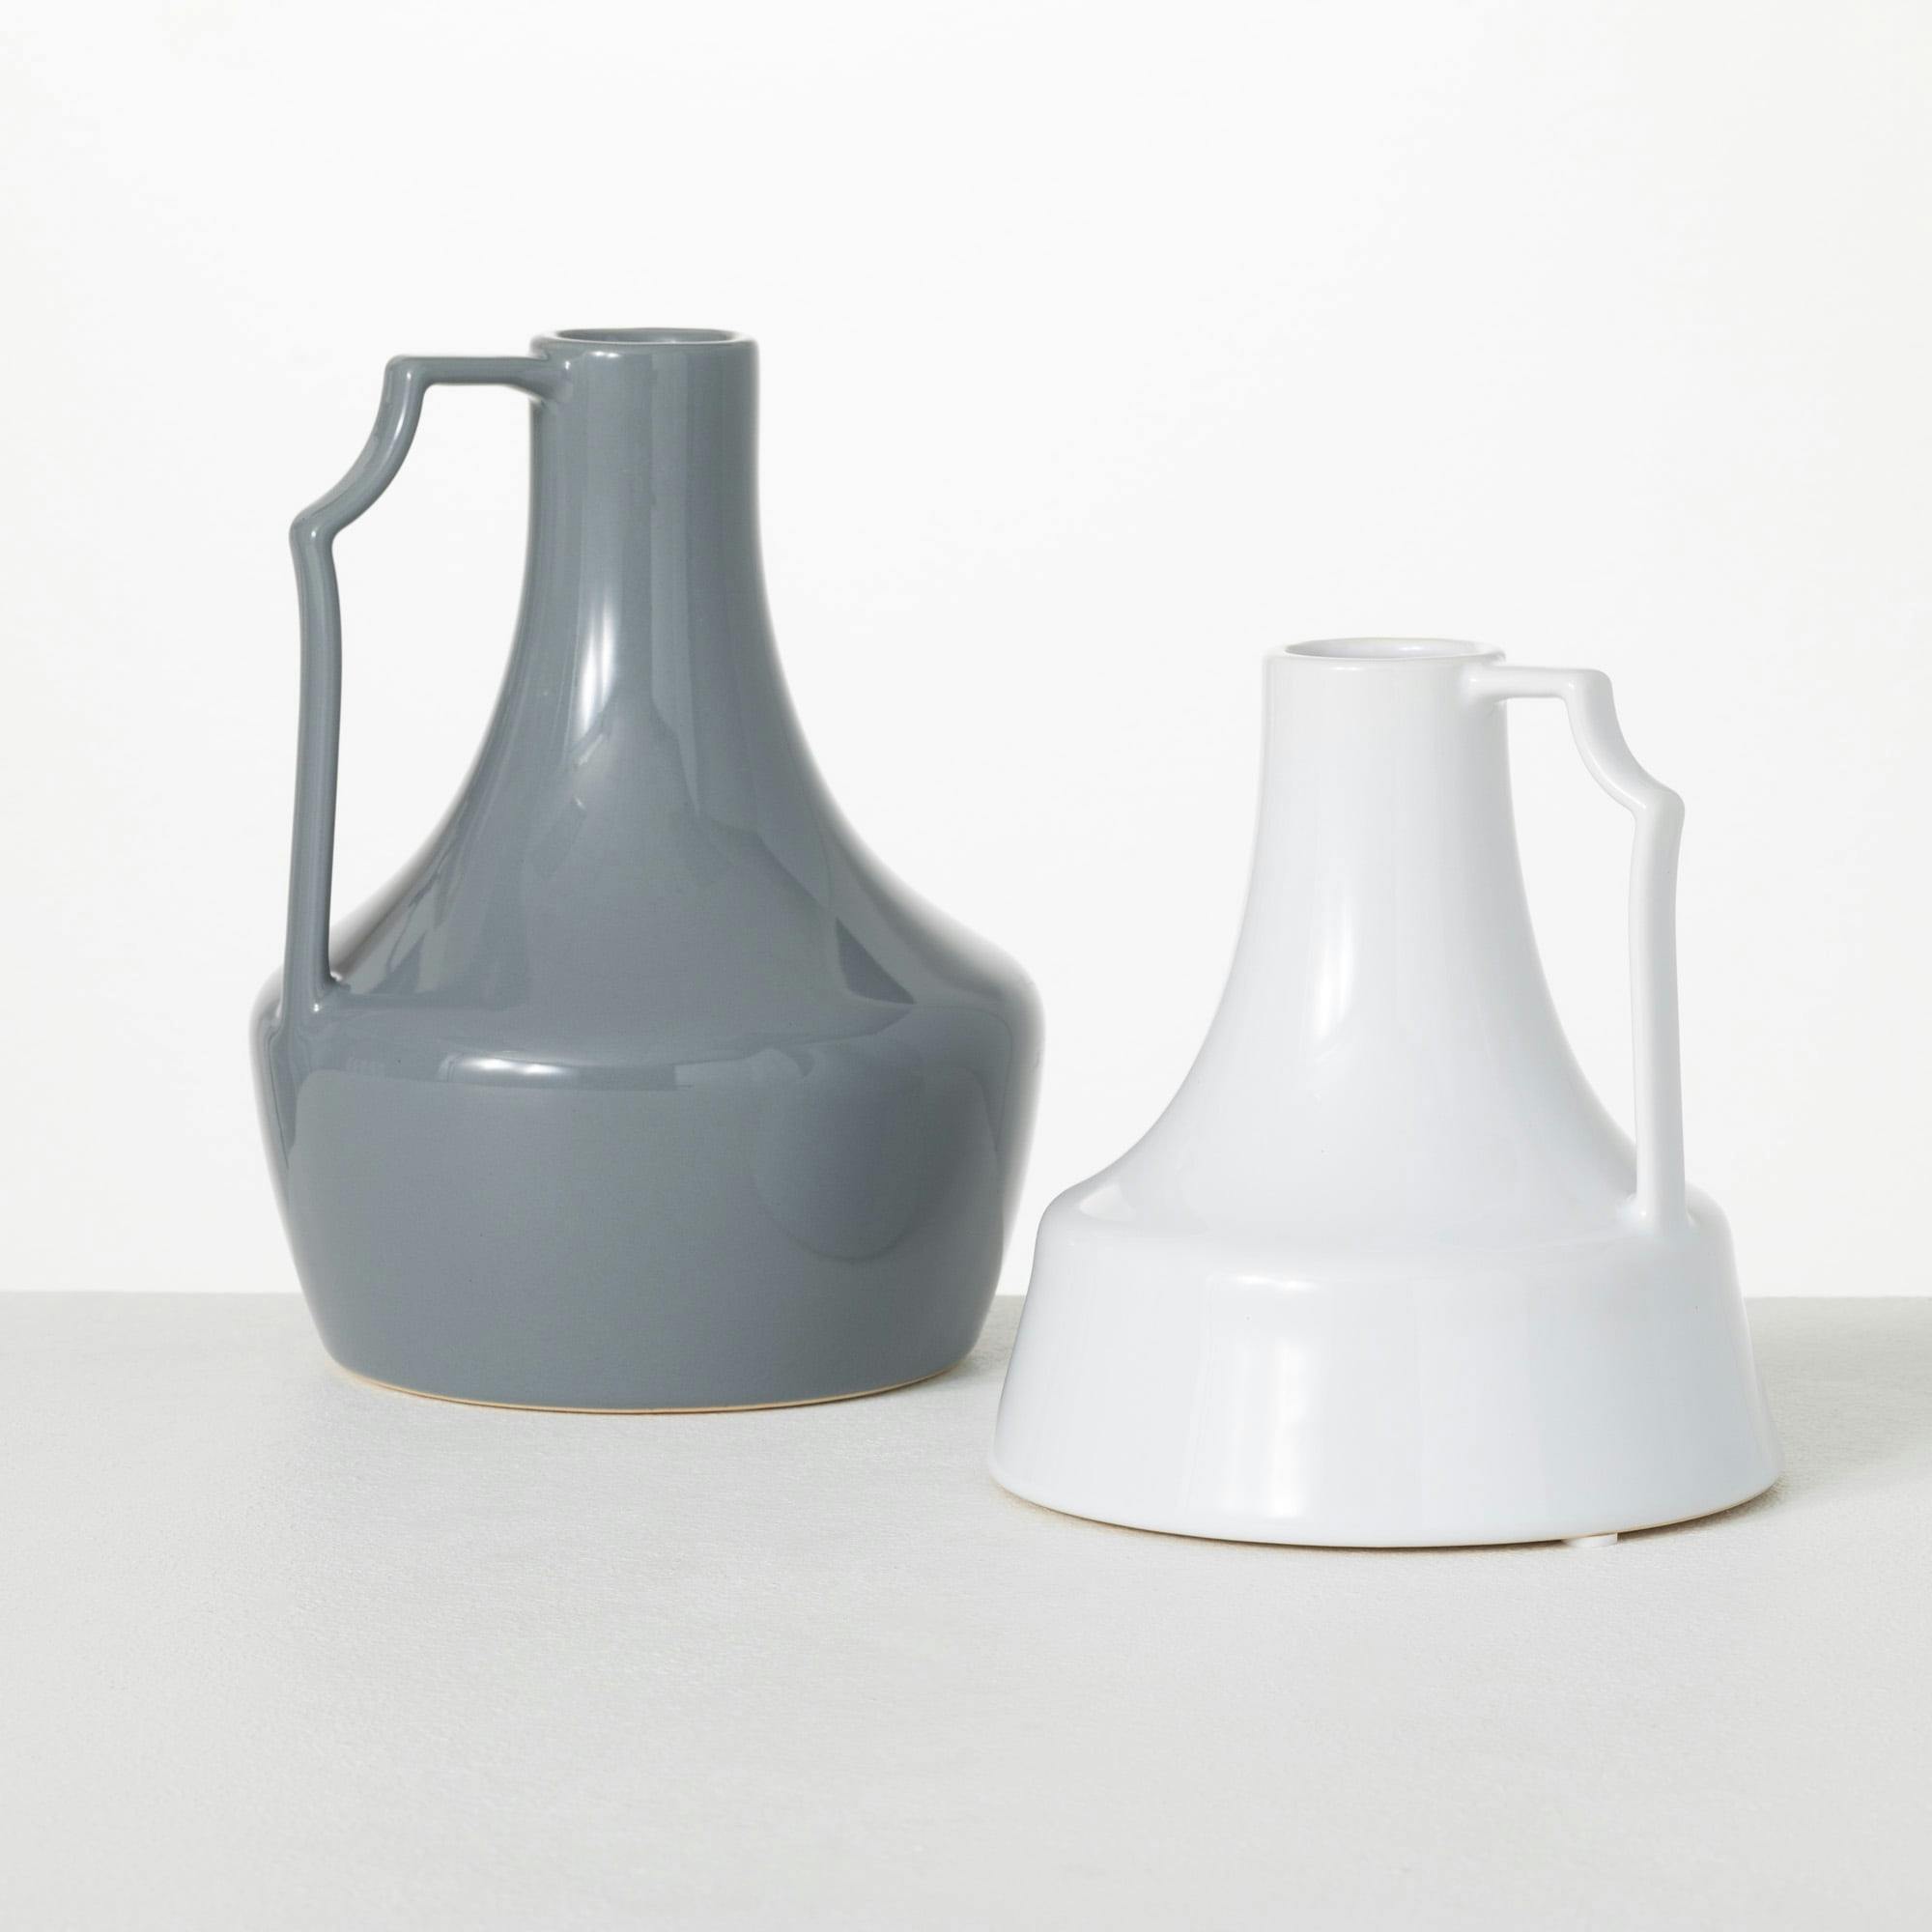 Elegant Slim-Handled Gray Ceramic Jar Duo, 9.5" & 11.5"